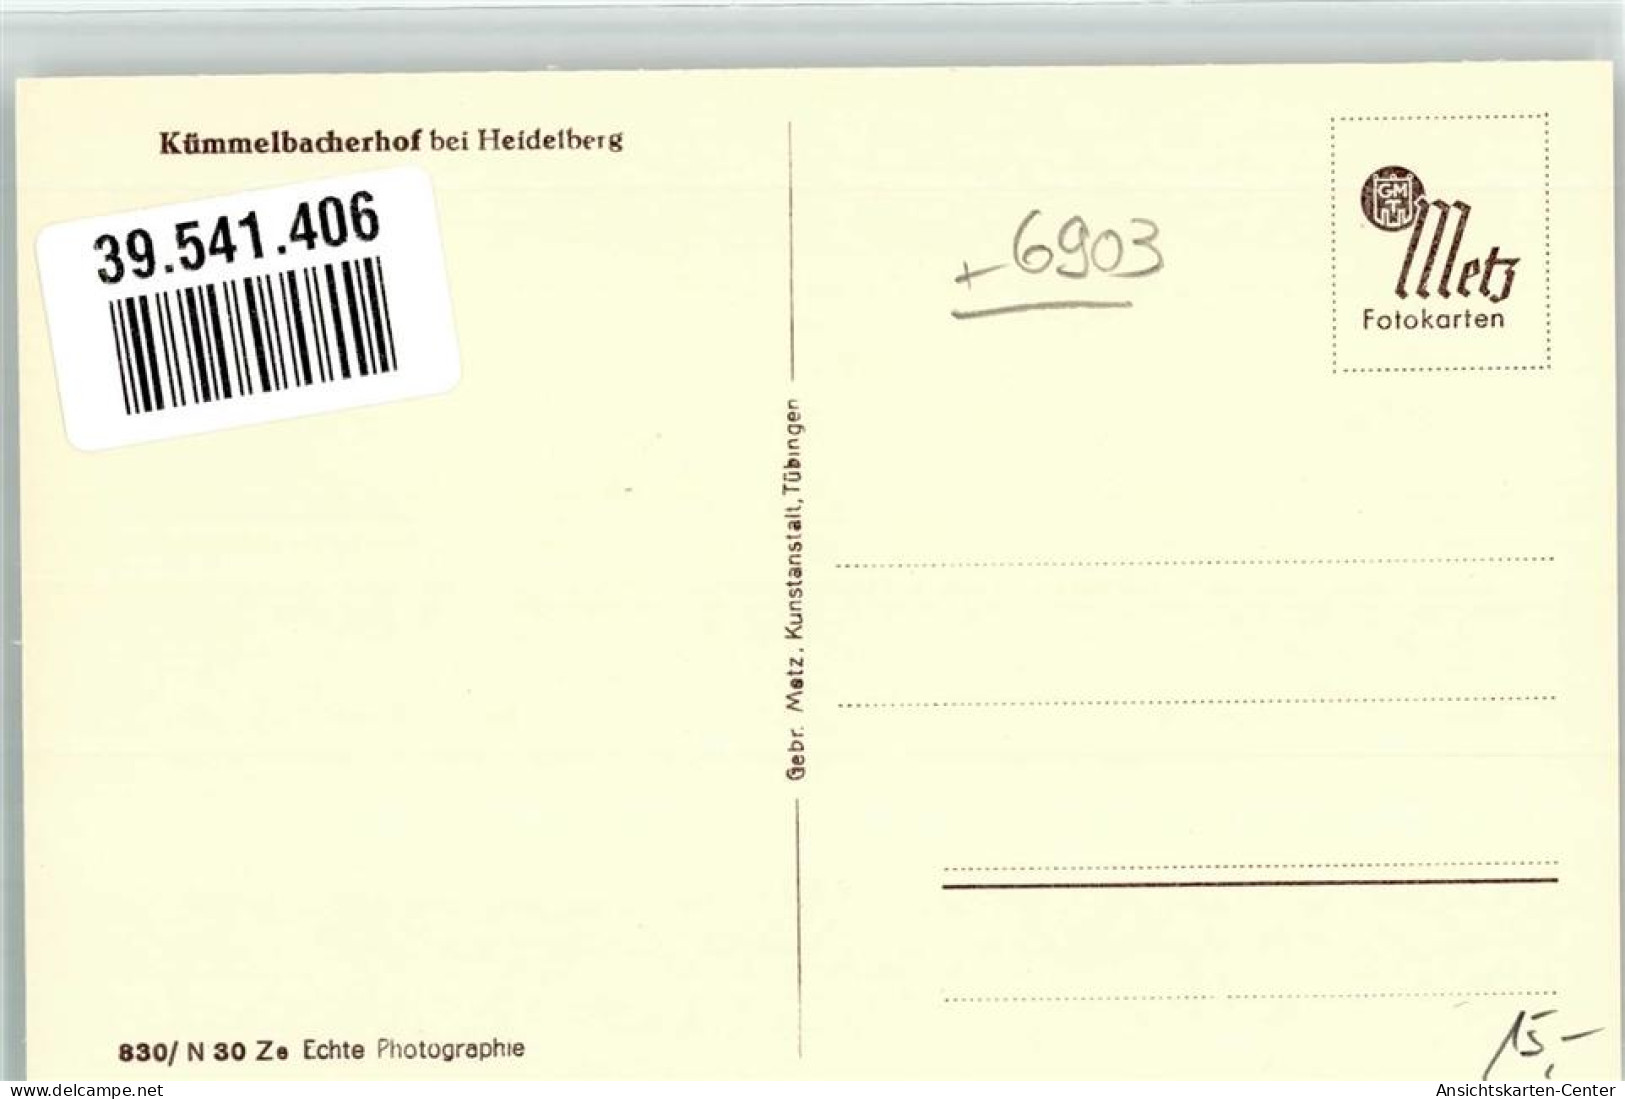 39541406 - Neckargemuend - Neckargemuend